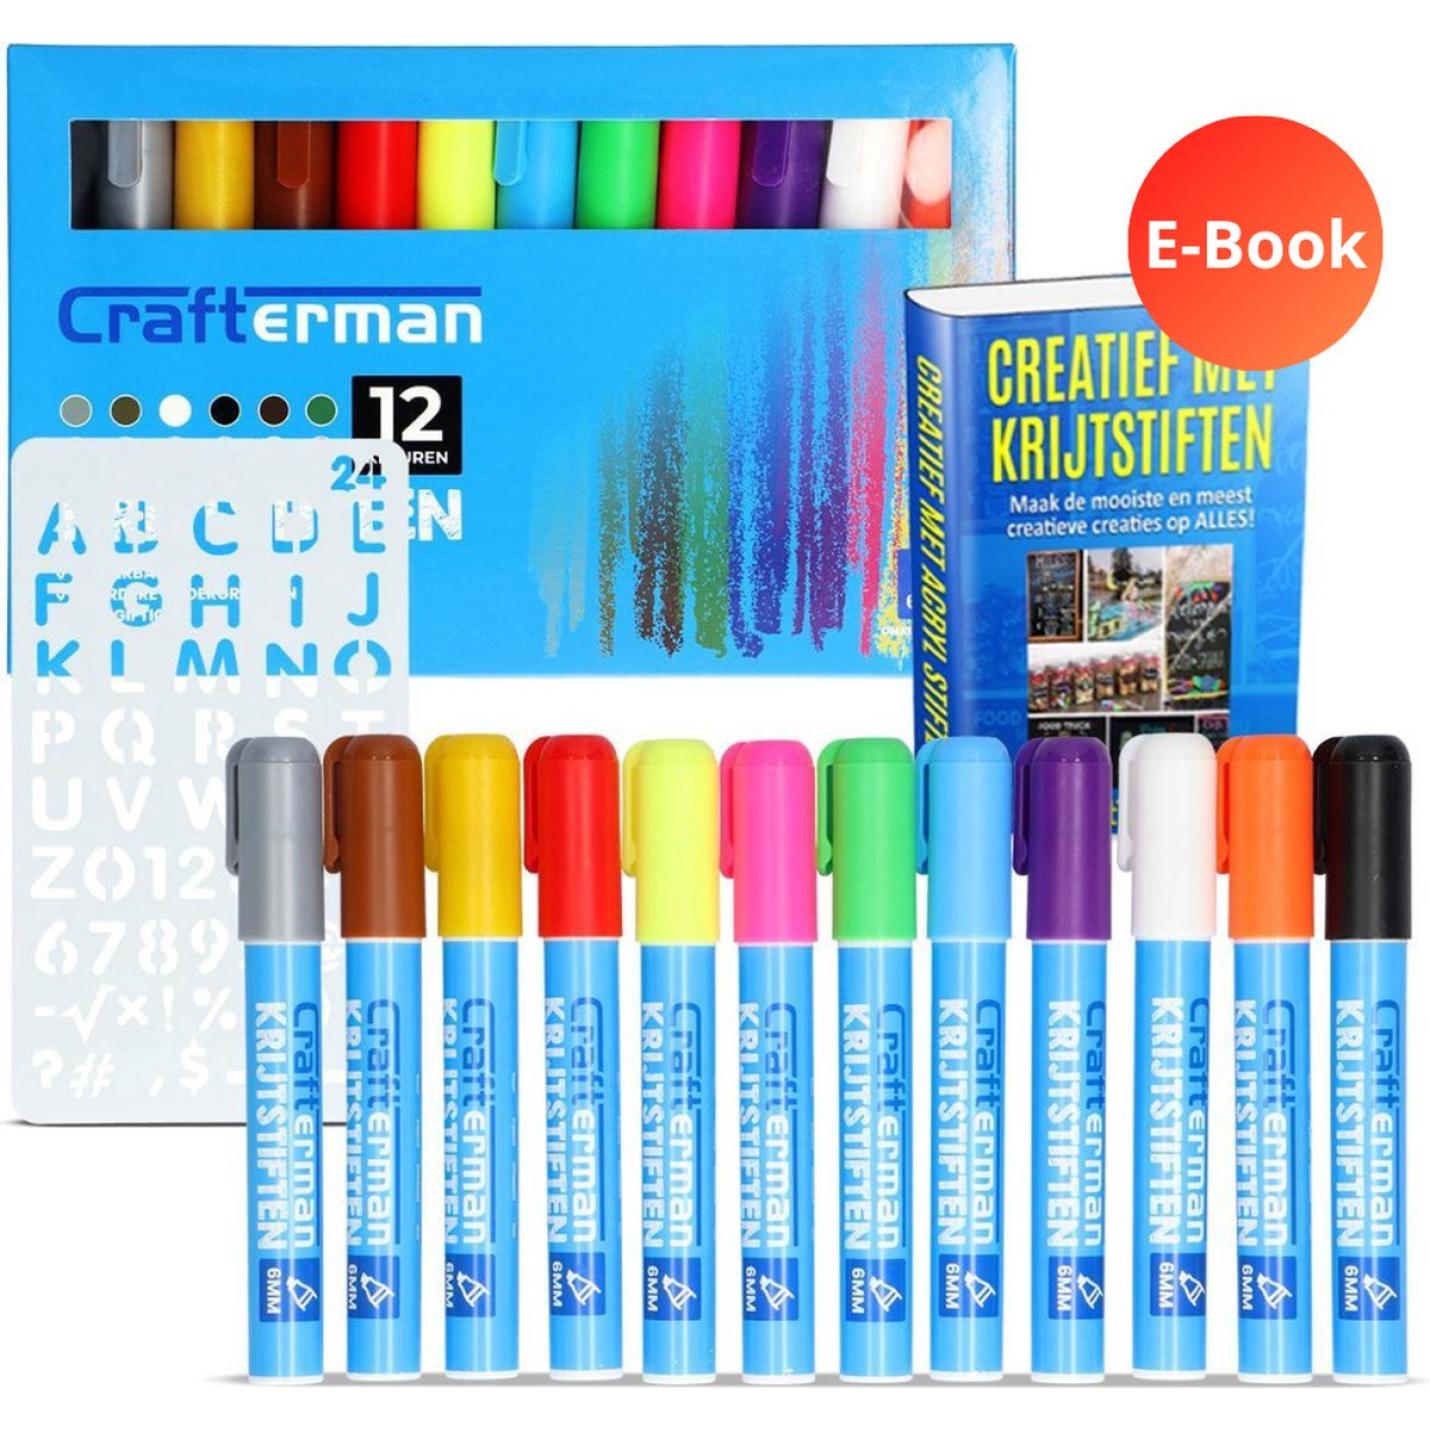 Krijtstiften - Raamstiften - glasstiften - whiteboard / krijtbord stiften - markers - 12 stuks - met stencil & e-Book Essntials | Webshoplocatie.nl